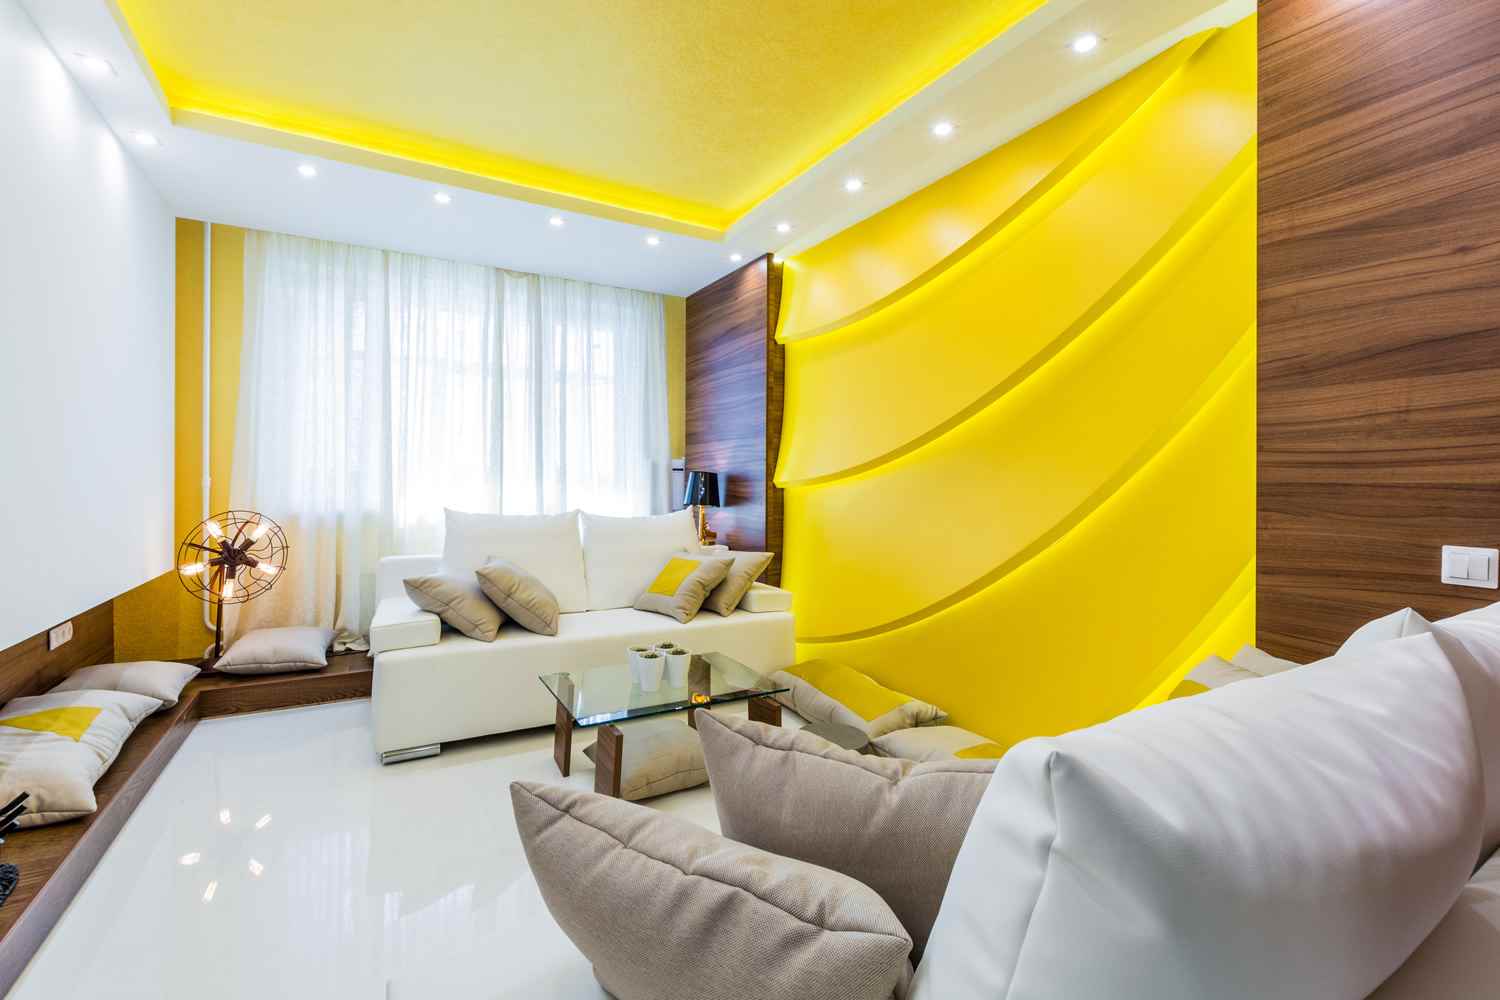 l'idée d'utiliser du jaune vif dans la conception de l'appartement